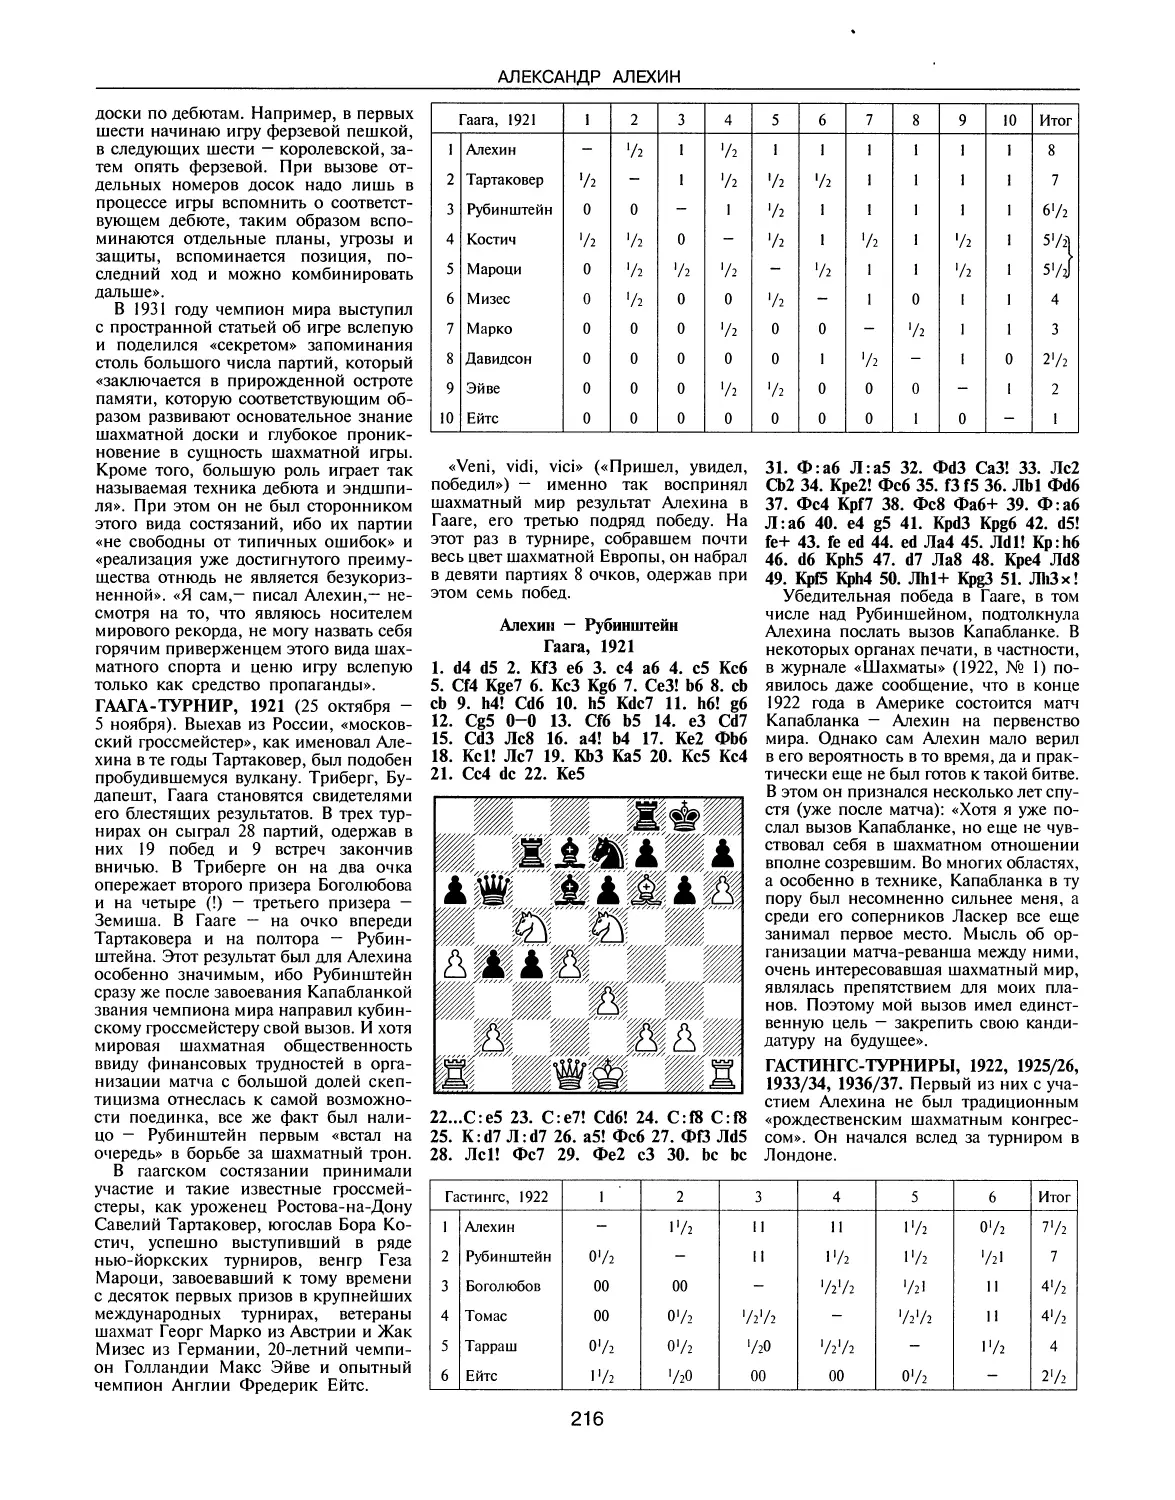 Гаага-турнир, 1921
Гастингс-турниры, 1922, 1925/26, 1933/34, 1936/37